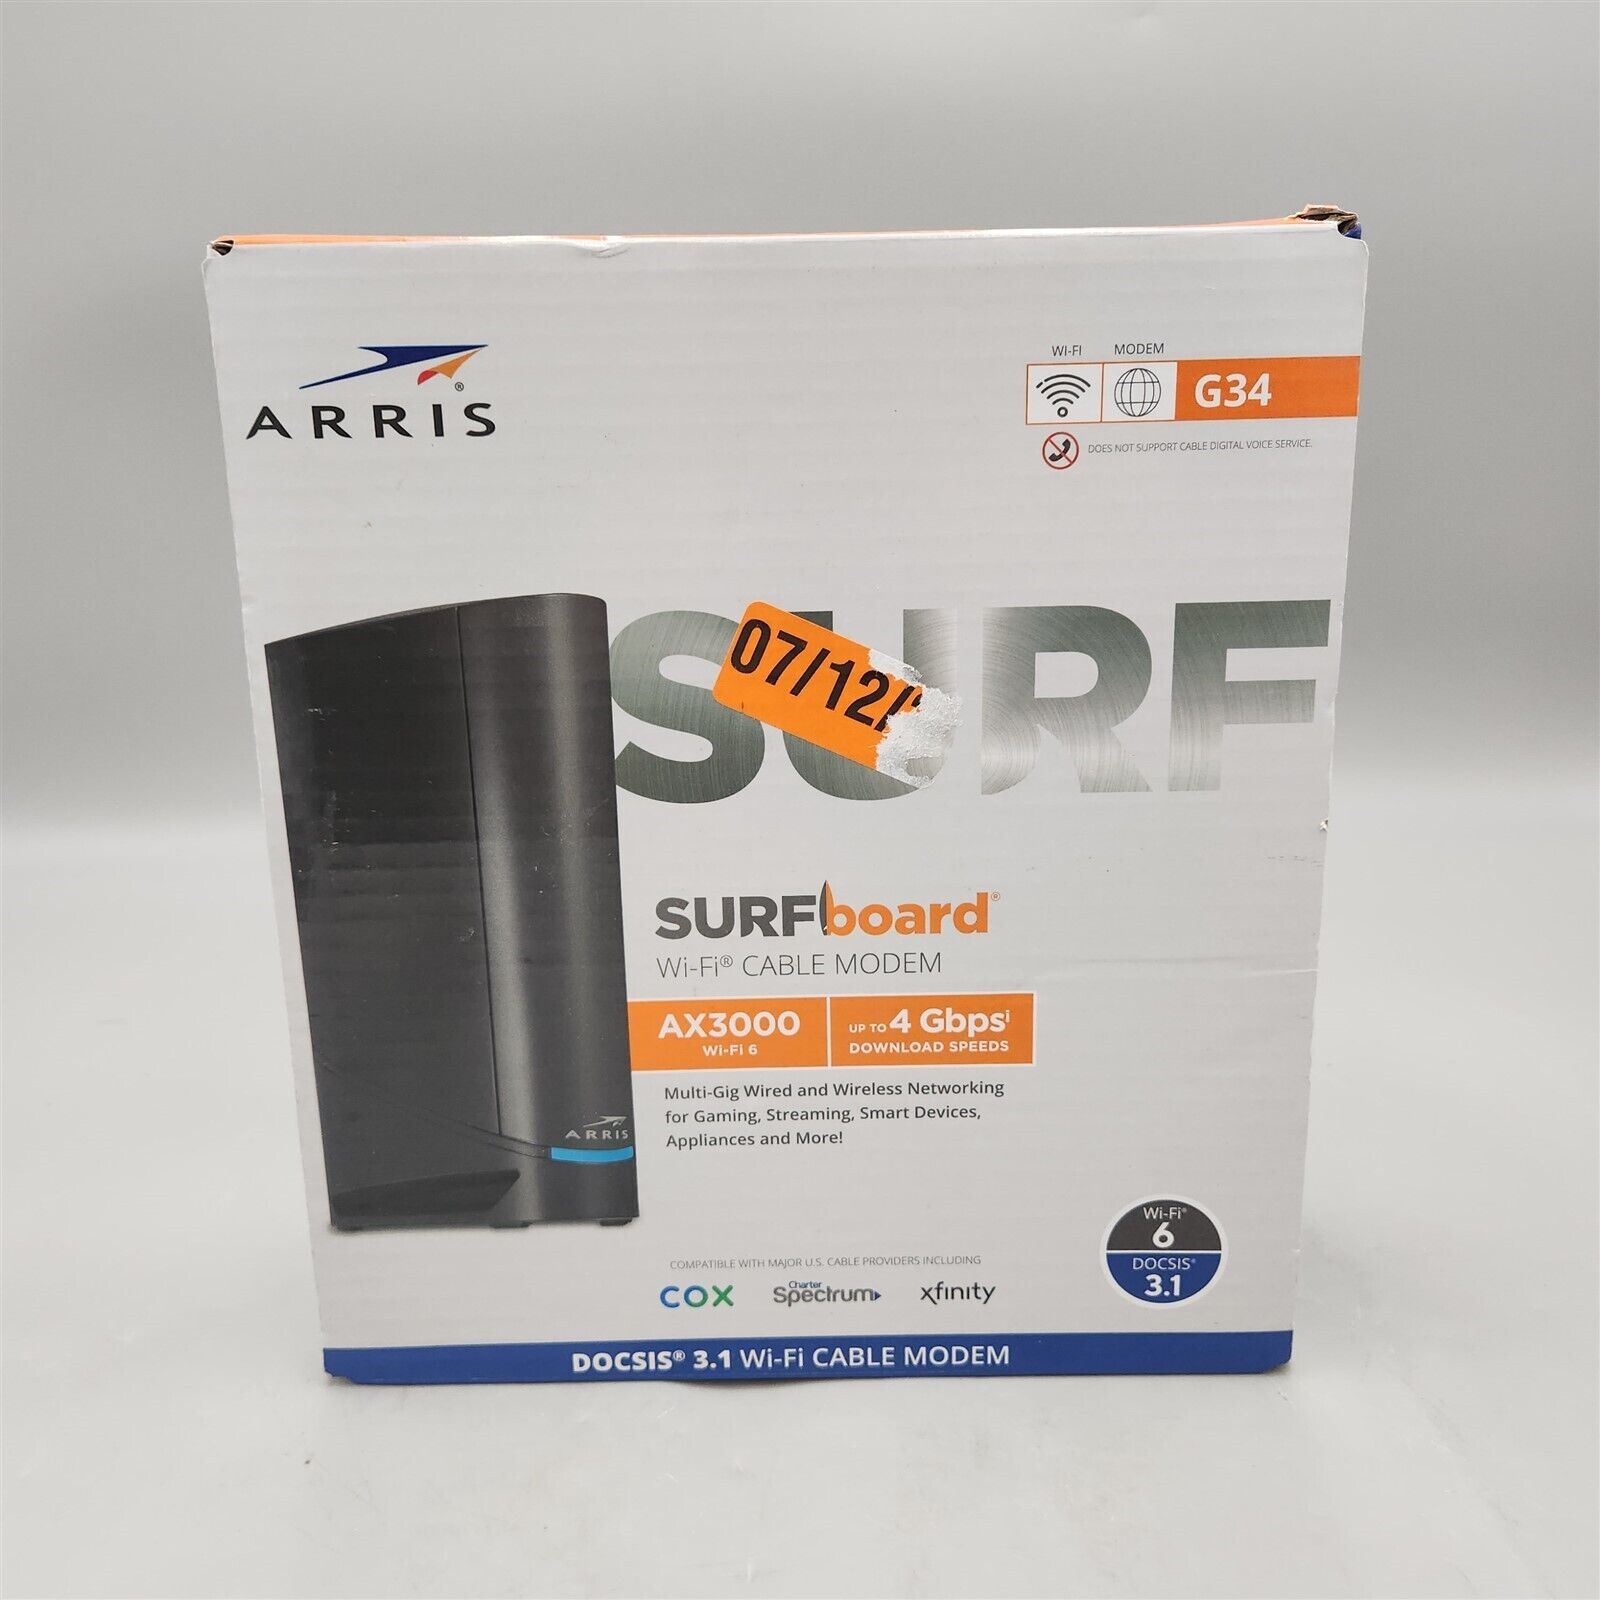 ARRIS Surfboard G34 DOCSIS 3.1 Gigabit Cable Modem & AX3000 Wi-Fi 6 Router